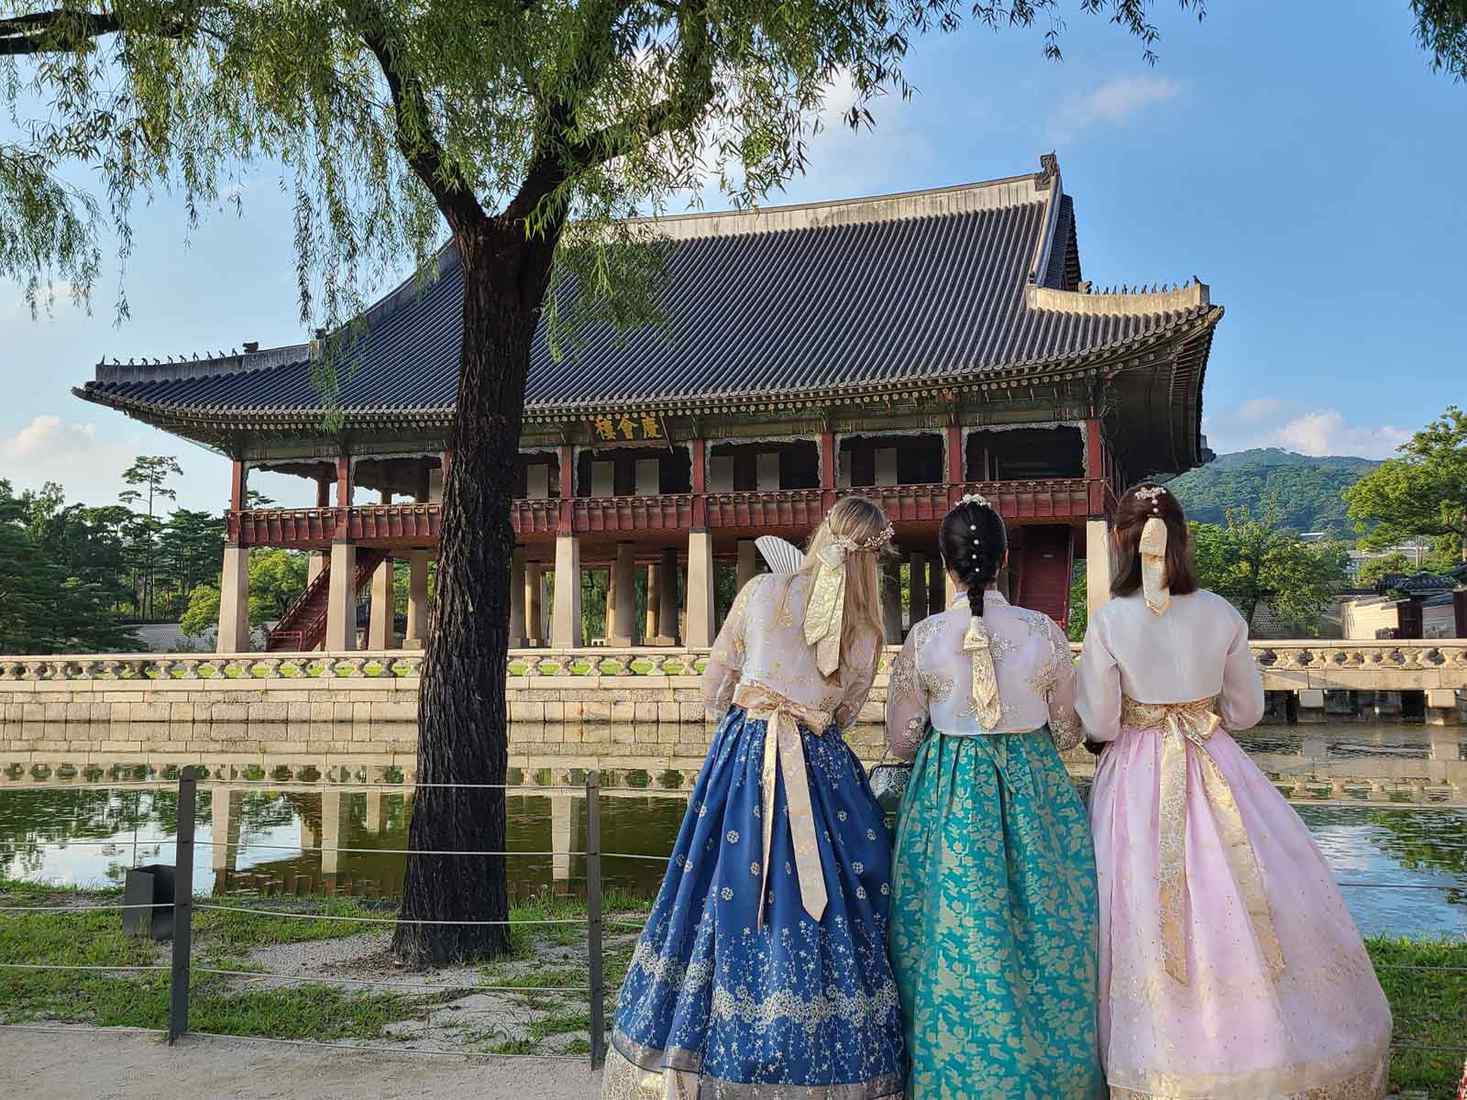 Three students at Gyeongbokgung Palace in Seoul, South Korea. 